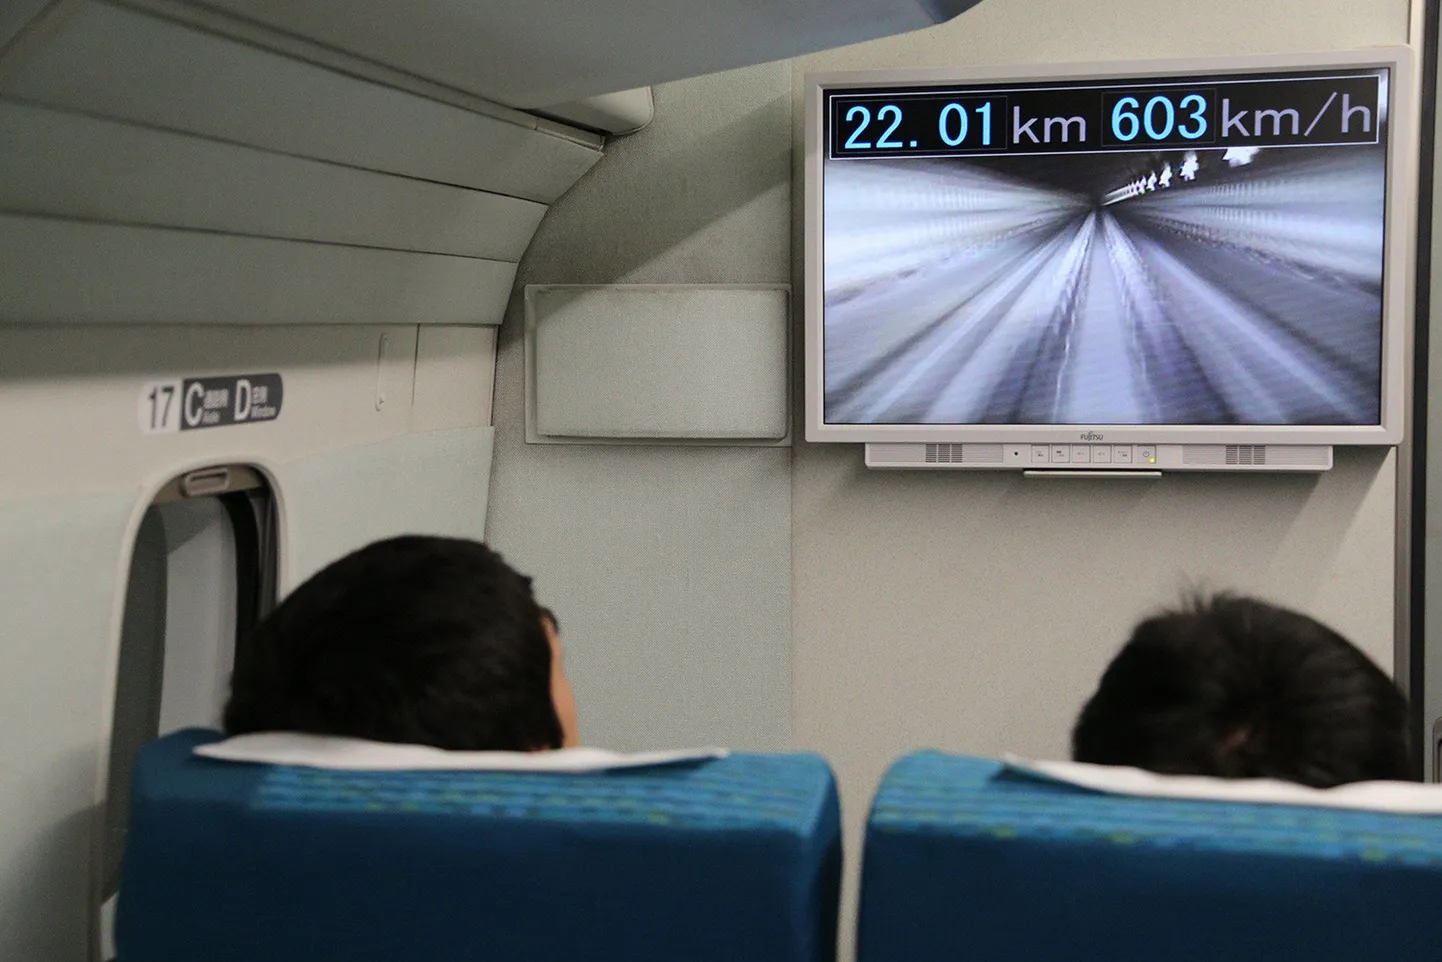 Central Japan Railway väljastatud foto, kus on näha, et magnetrong on saavutanud kiiruseks 603 kilomeetrit tunnis.